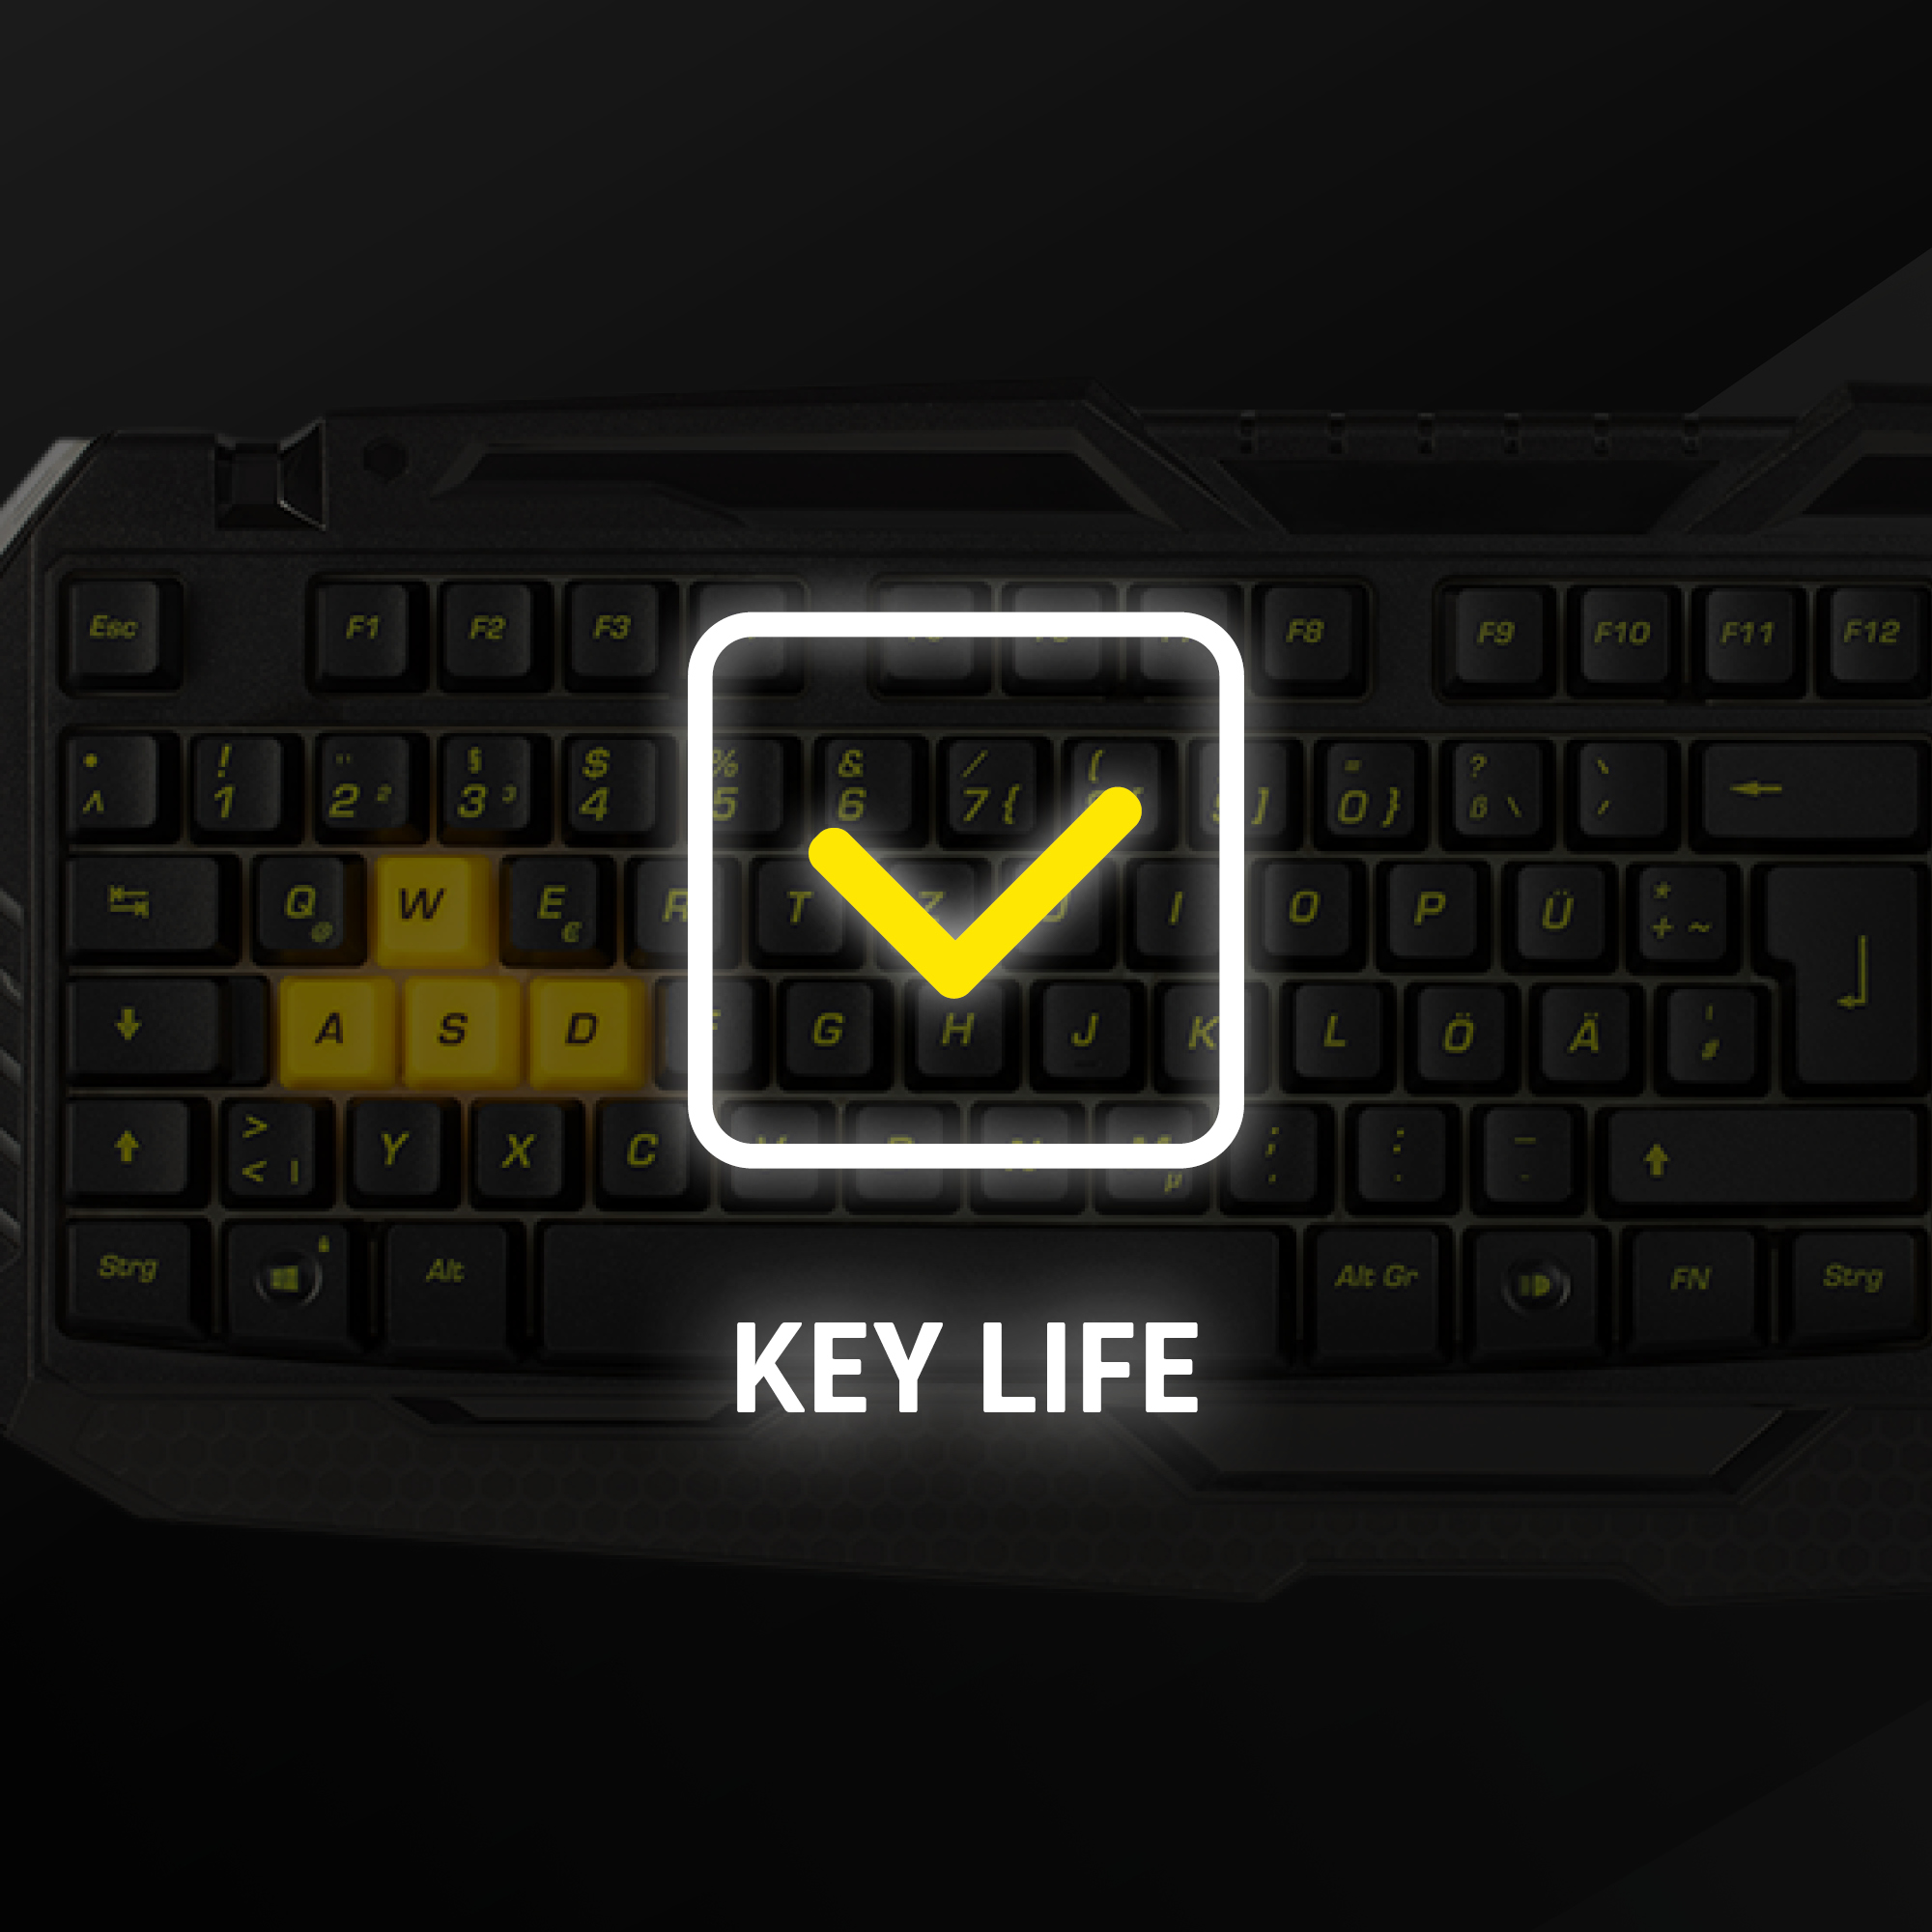 Standard Tastatur, BVB-Gaming Tastatur, Snakebyte PC SNAKEBYTE